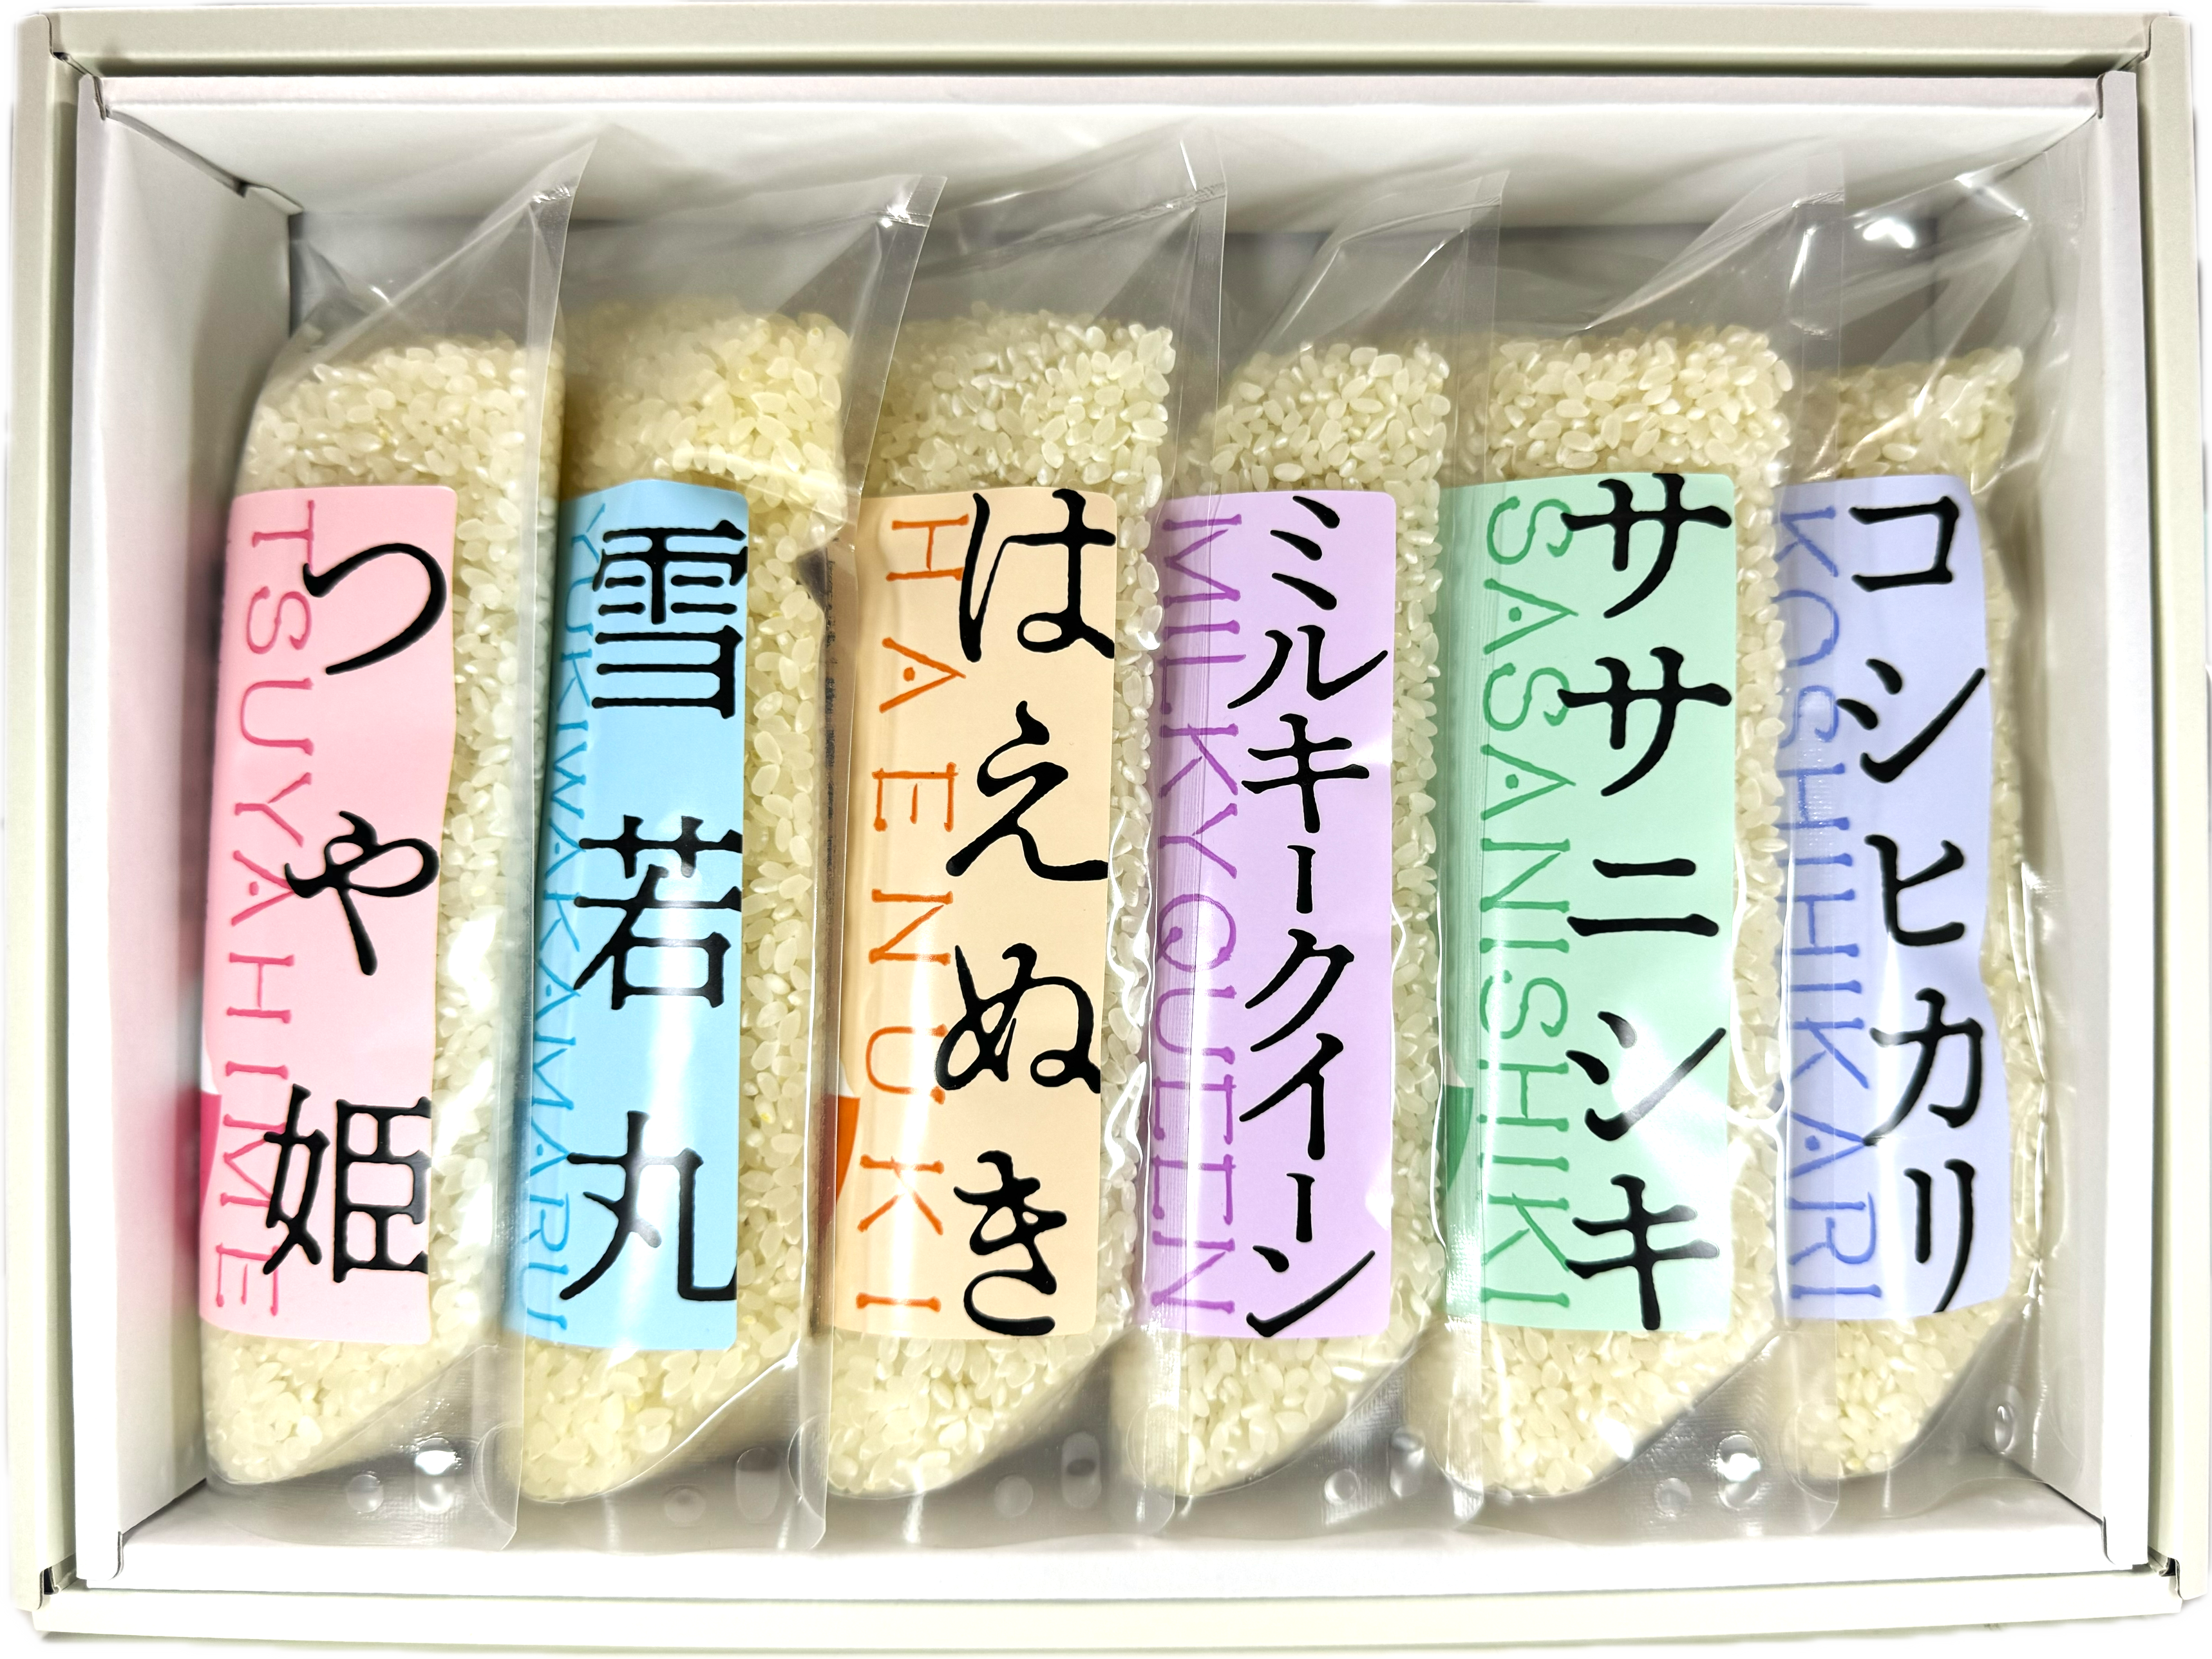 まずはお試し！山形・佐藤ファームのお米「6種食べ比べセット」